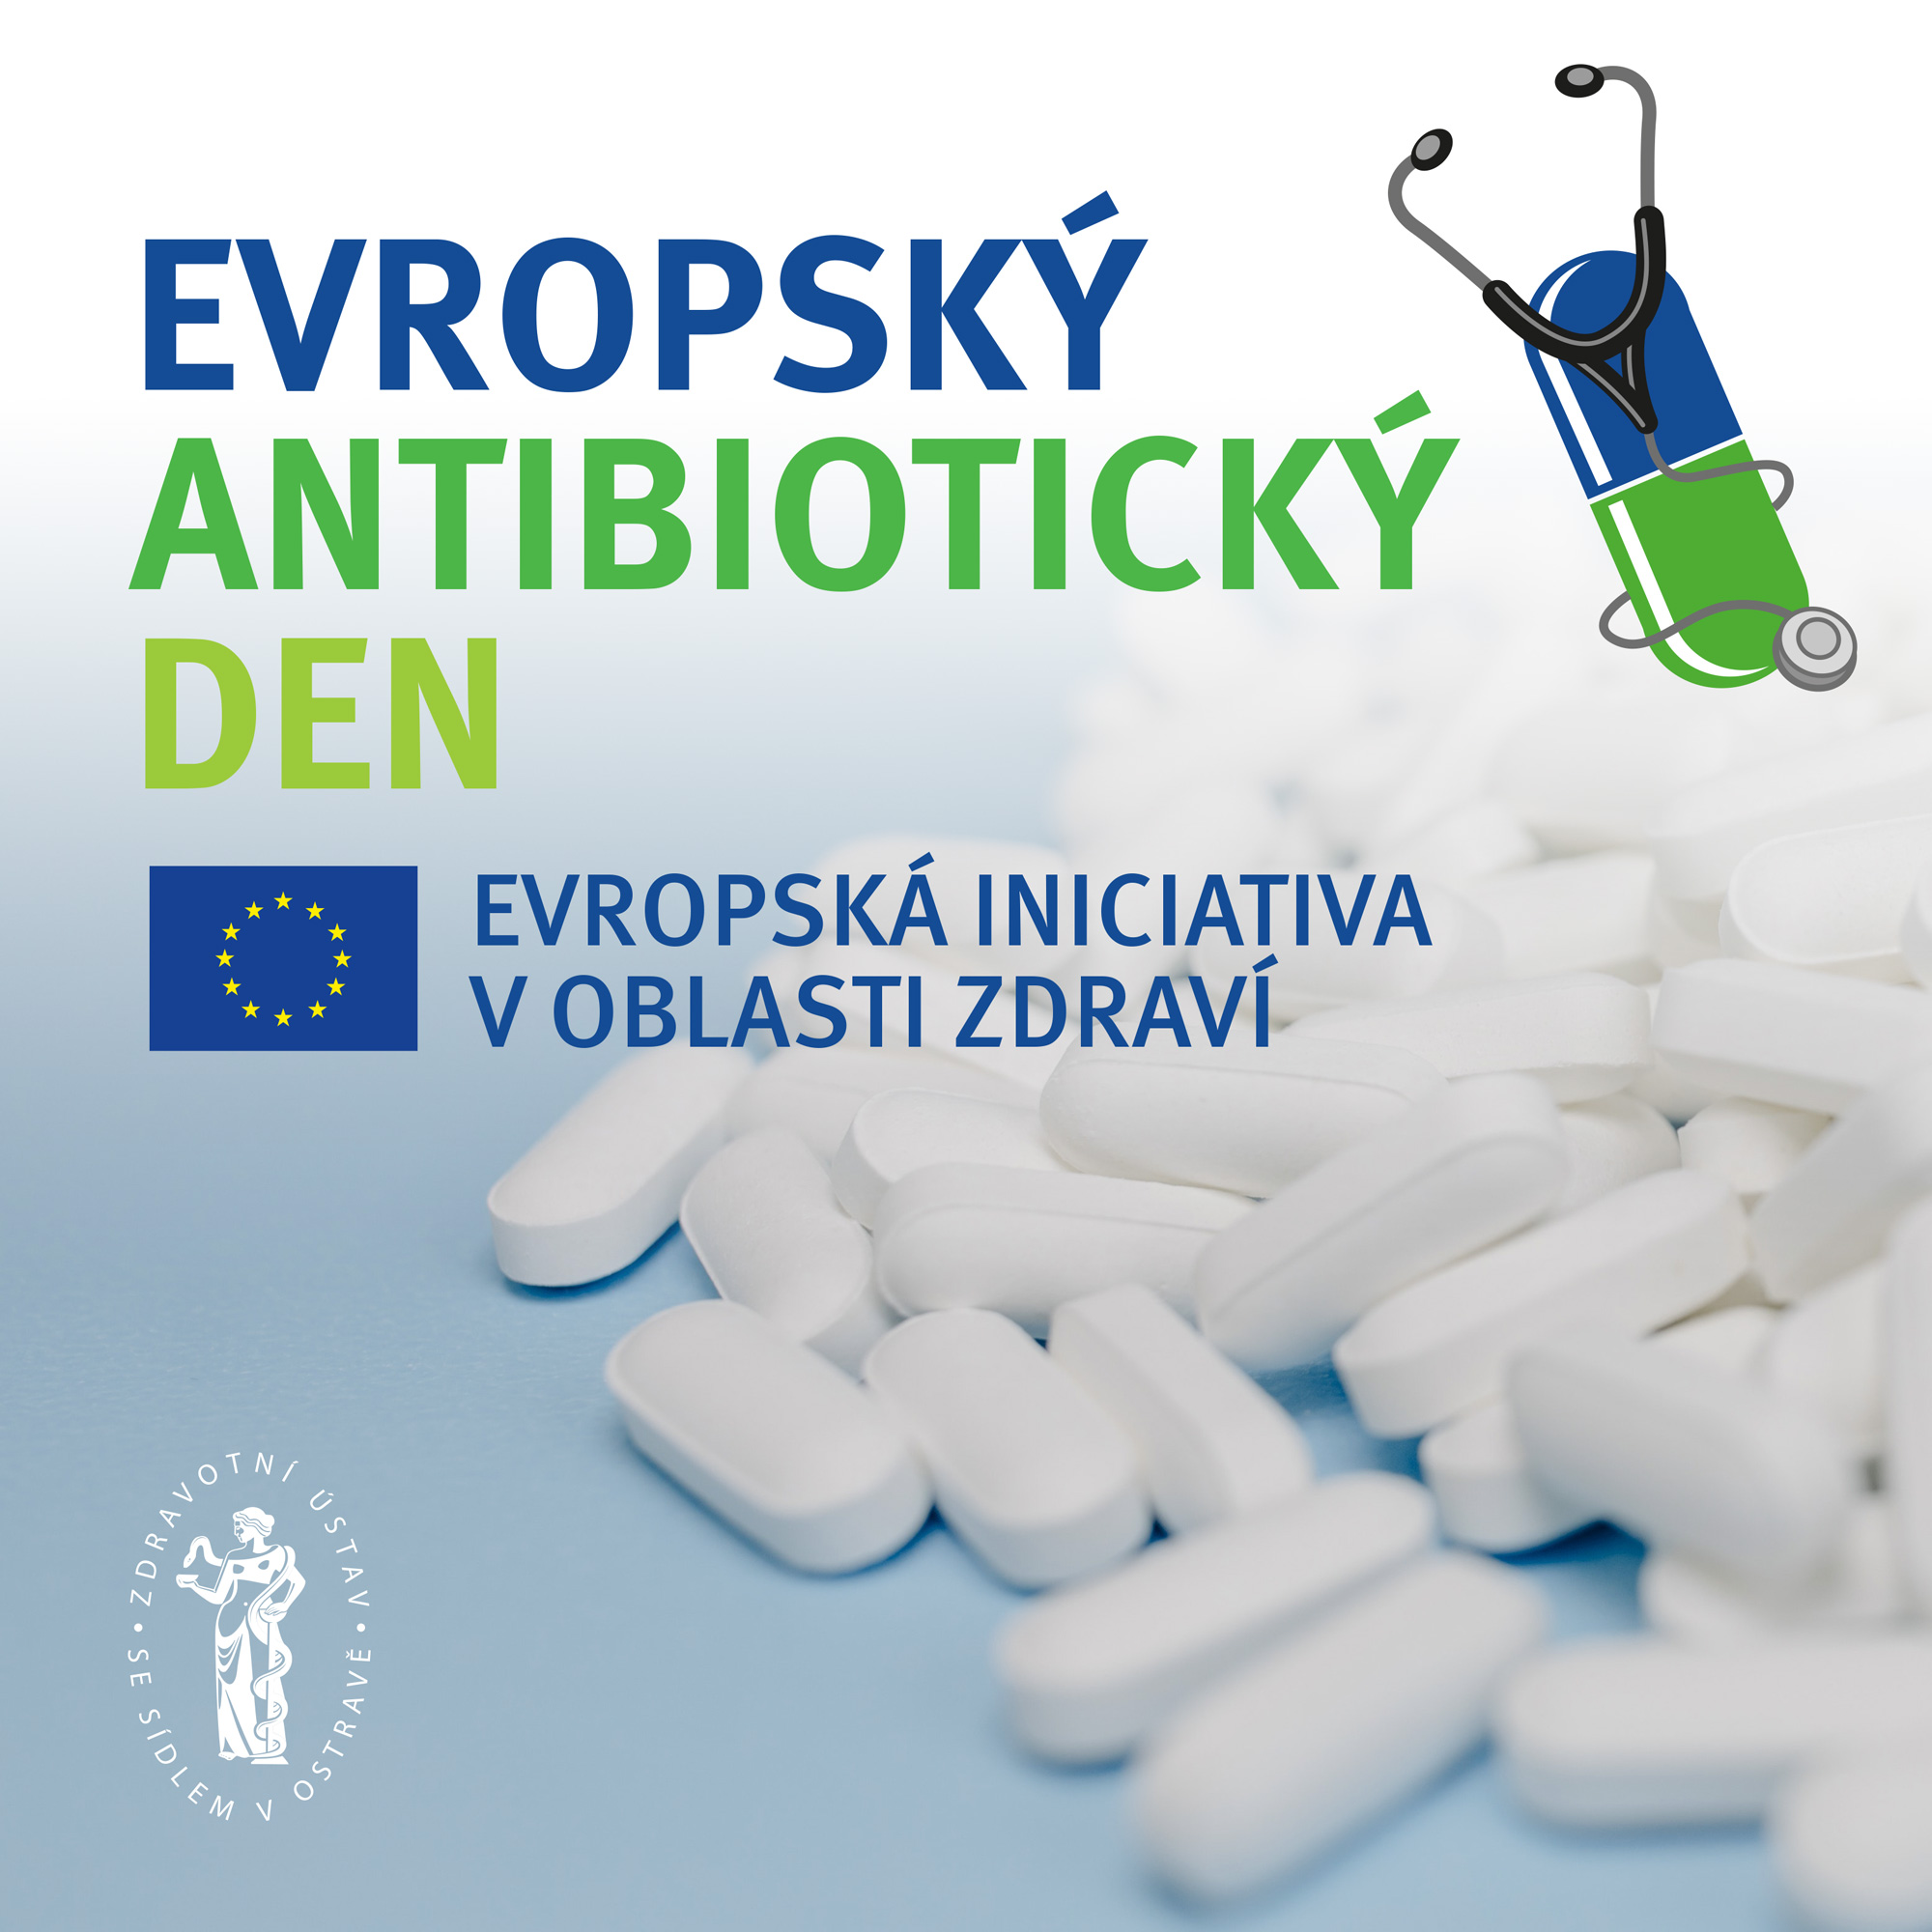 Evropský antibiotický den (EAAD)